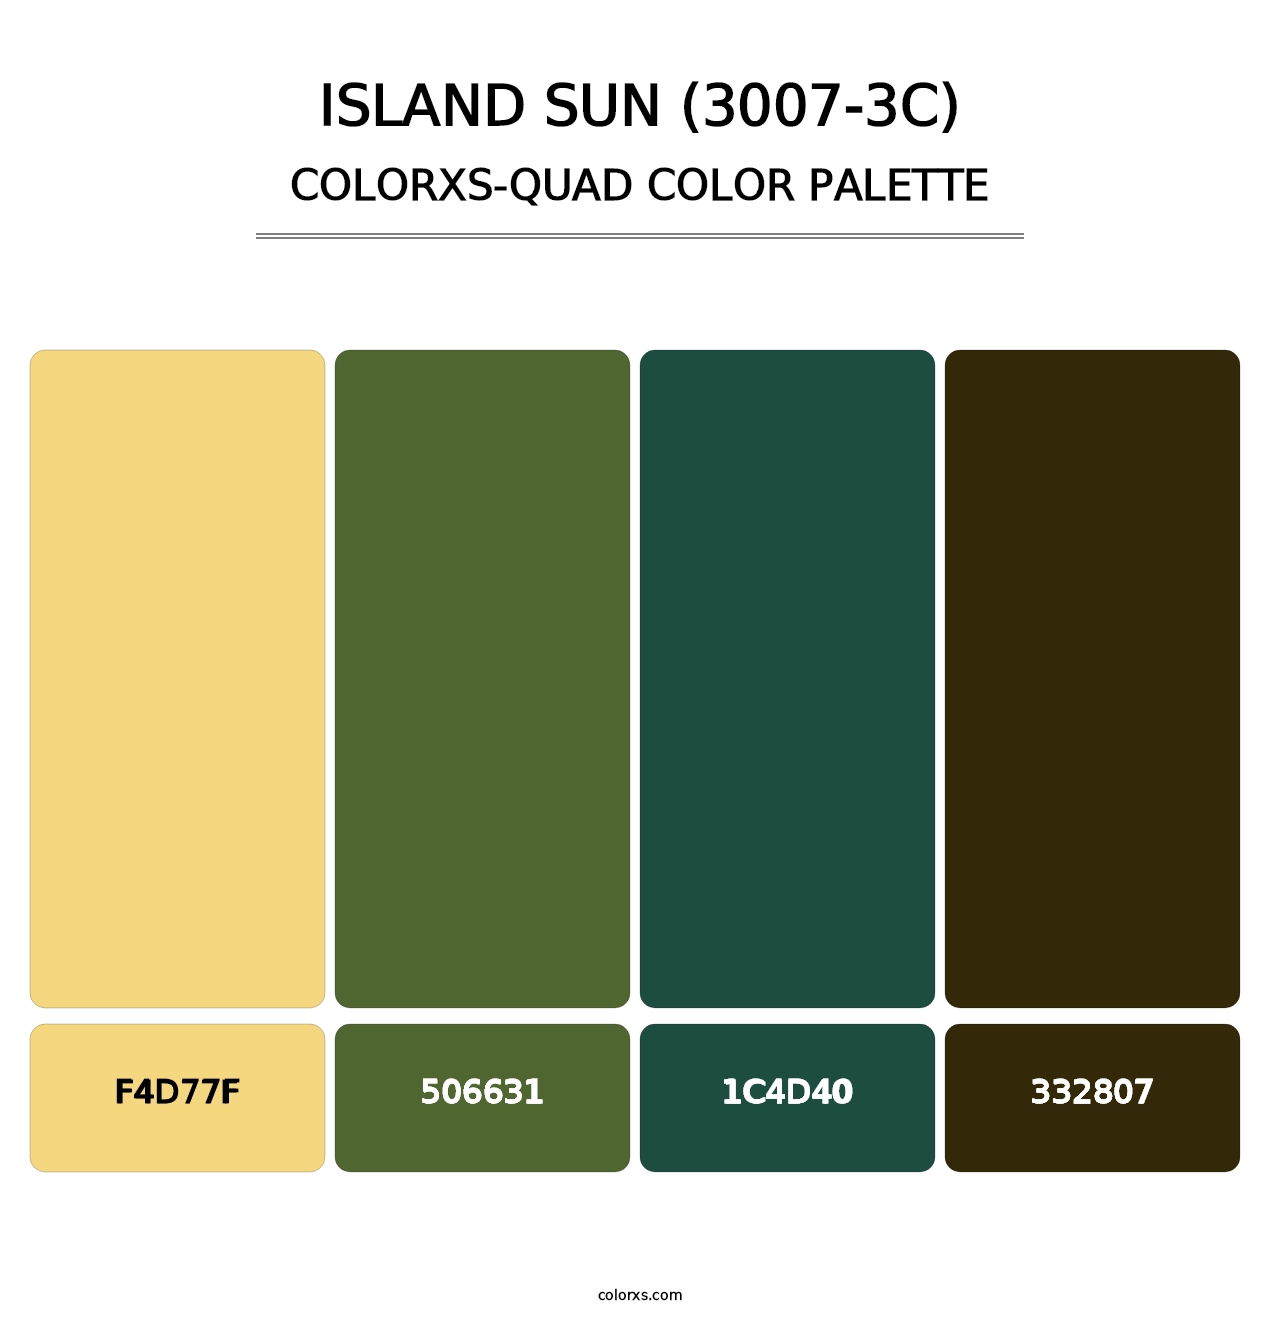 Island Sun (3007-3C) - Colorxs Quad Palette